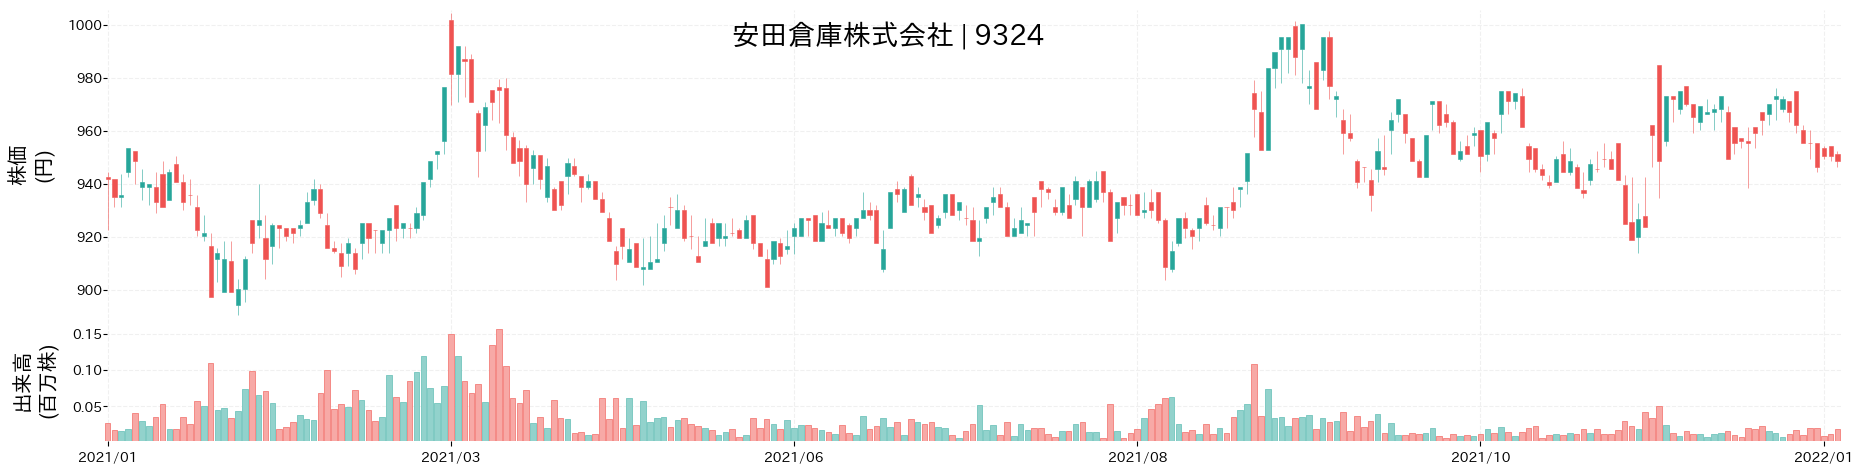 安田倉庫の株価推移(2021)